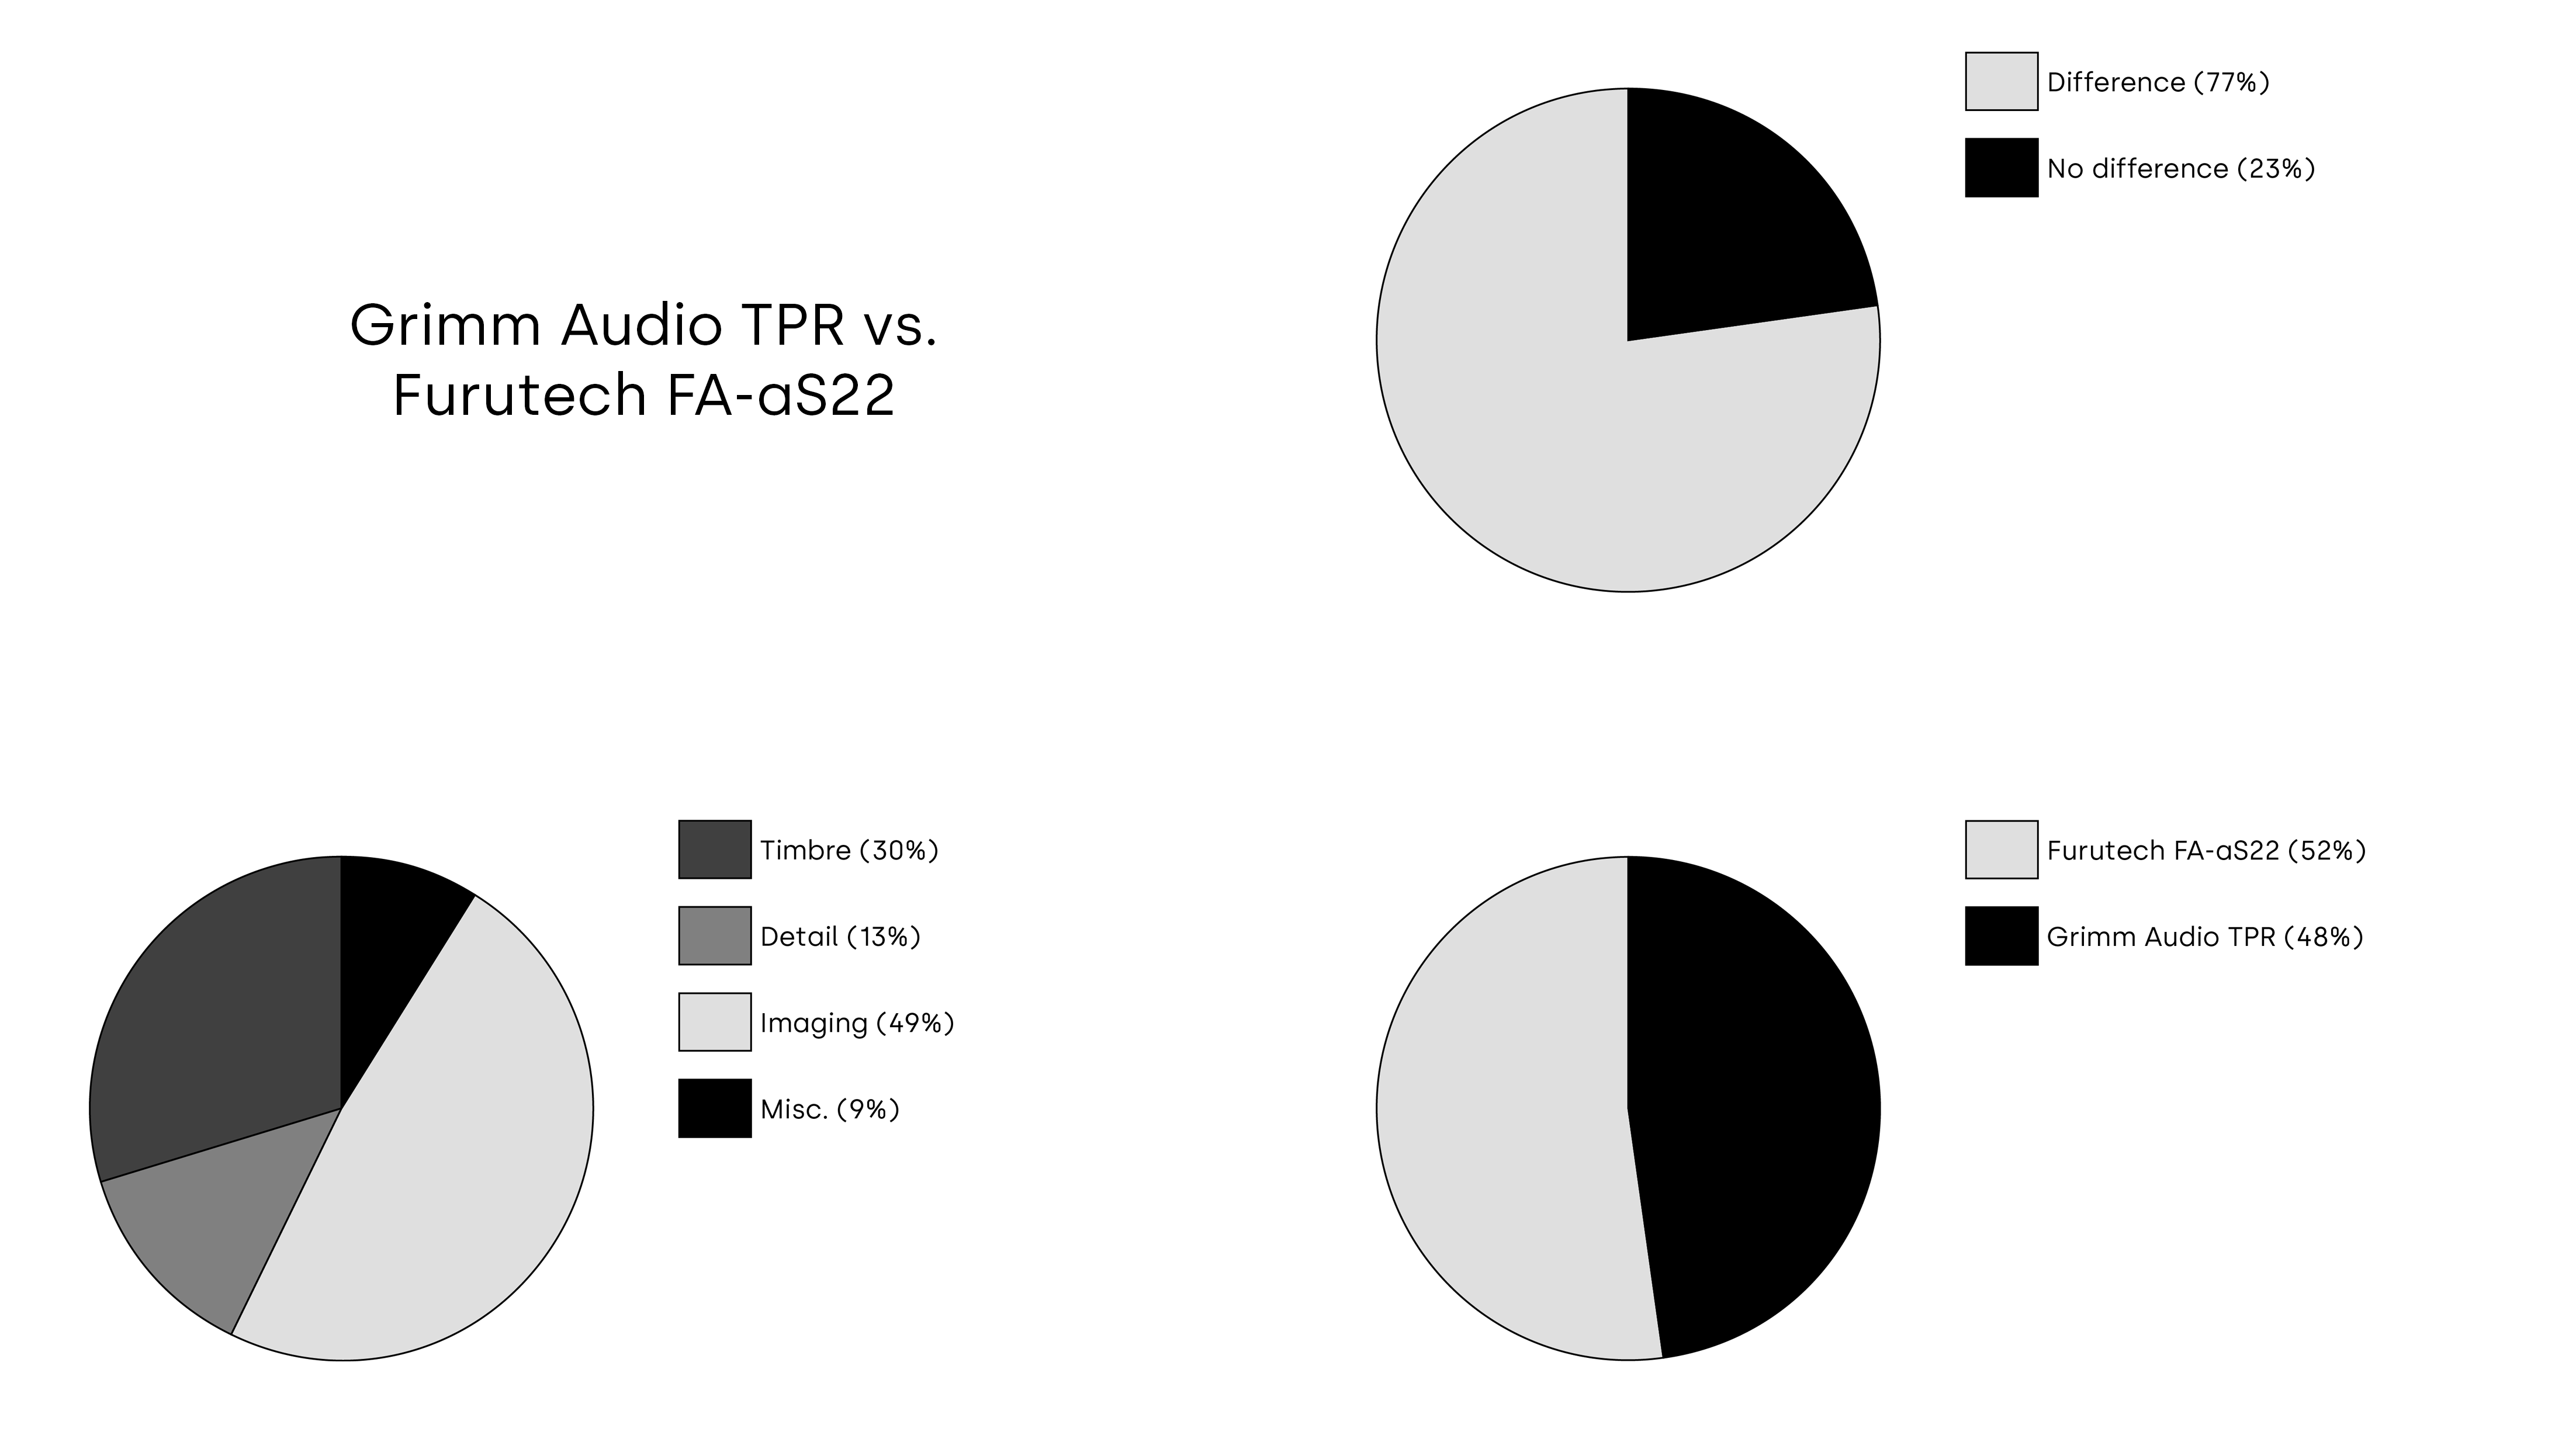 TRPTK Cable Comparison 2023 - Grimm Audio TPR vs. Furutech FA-aS22